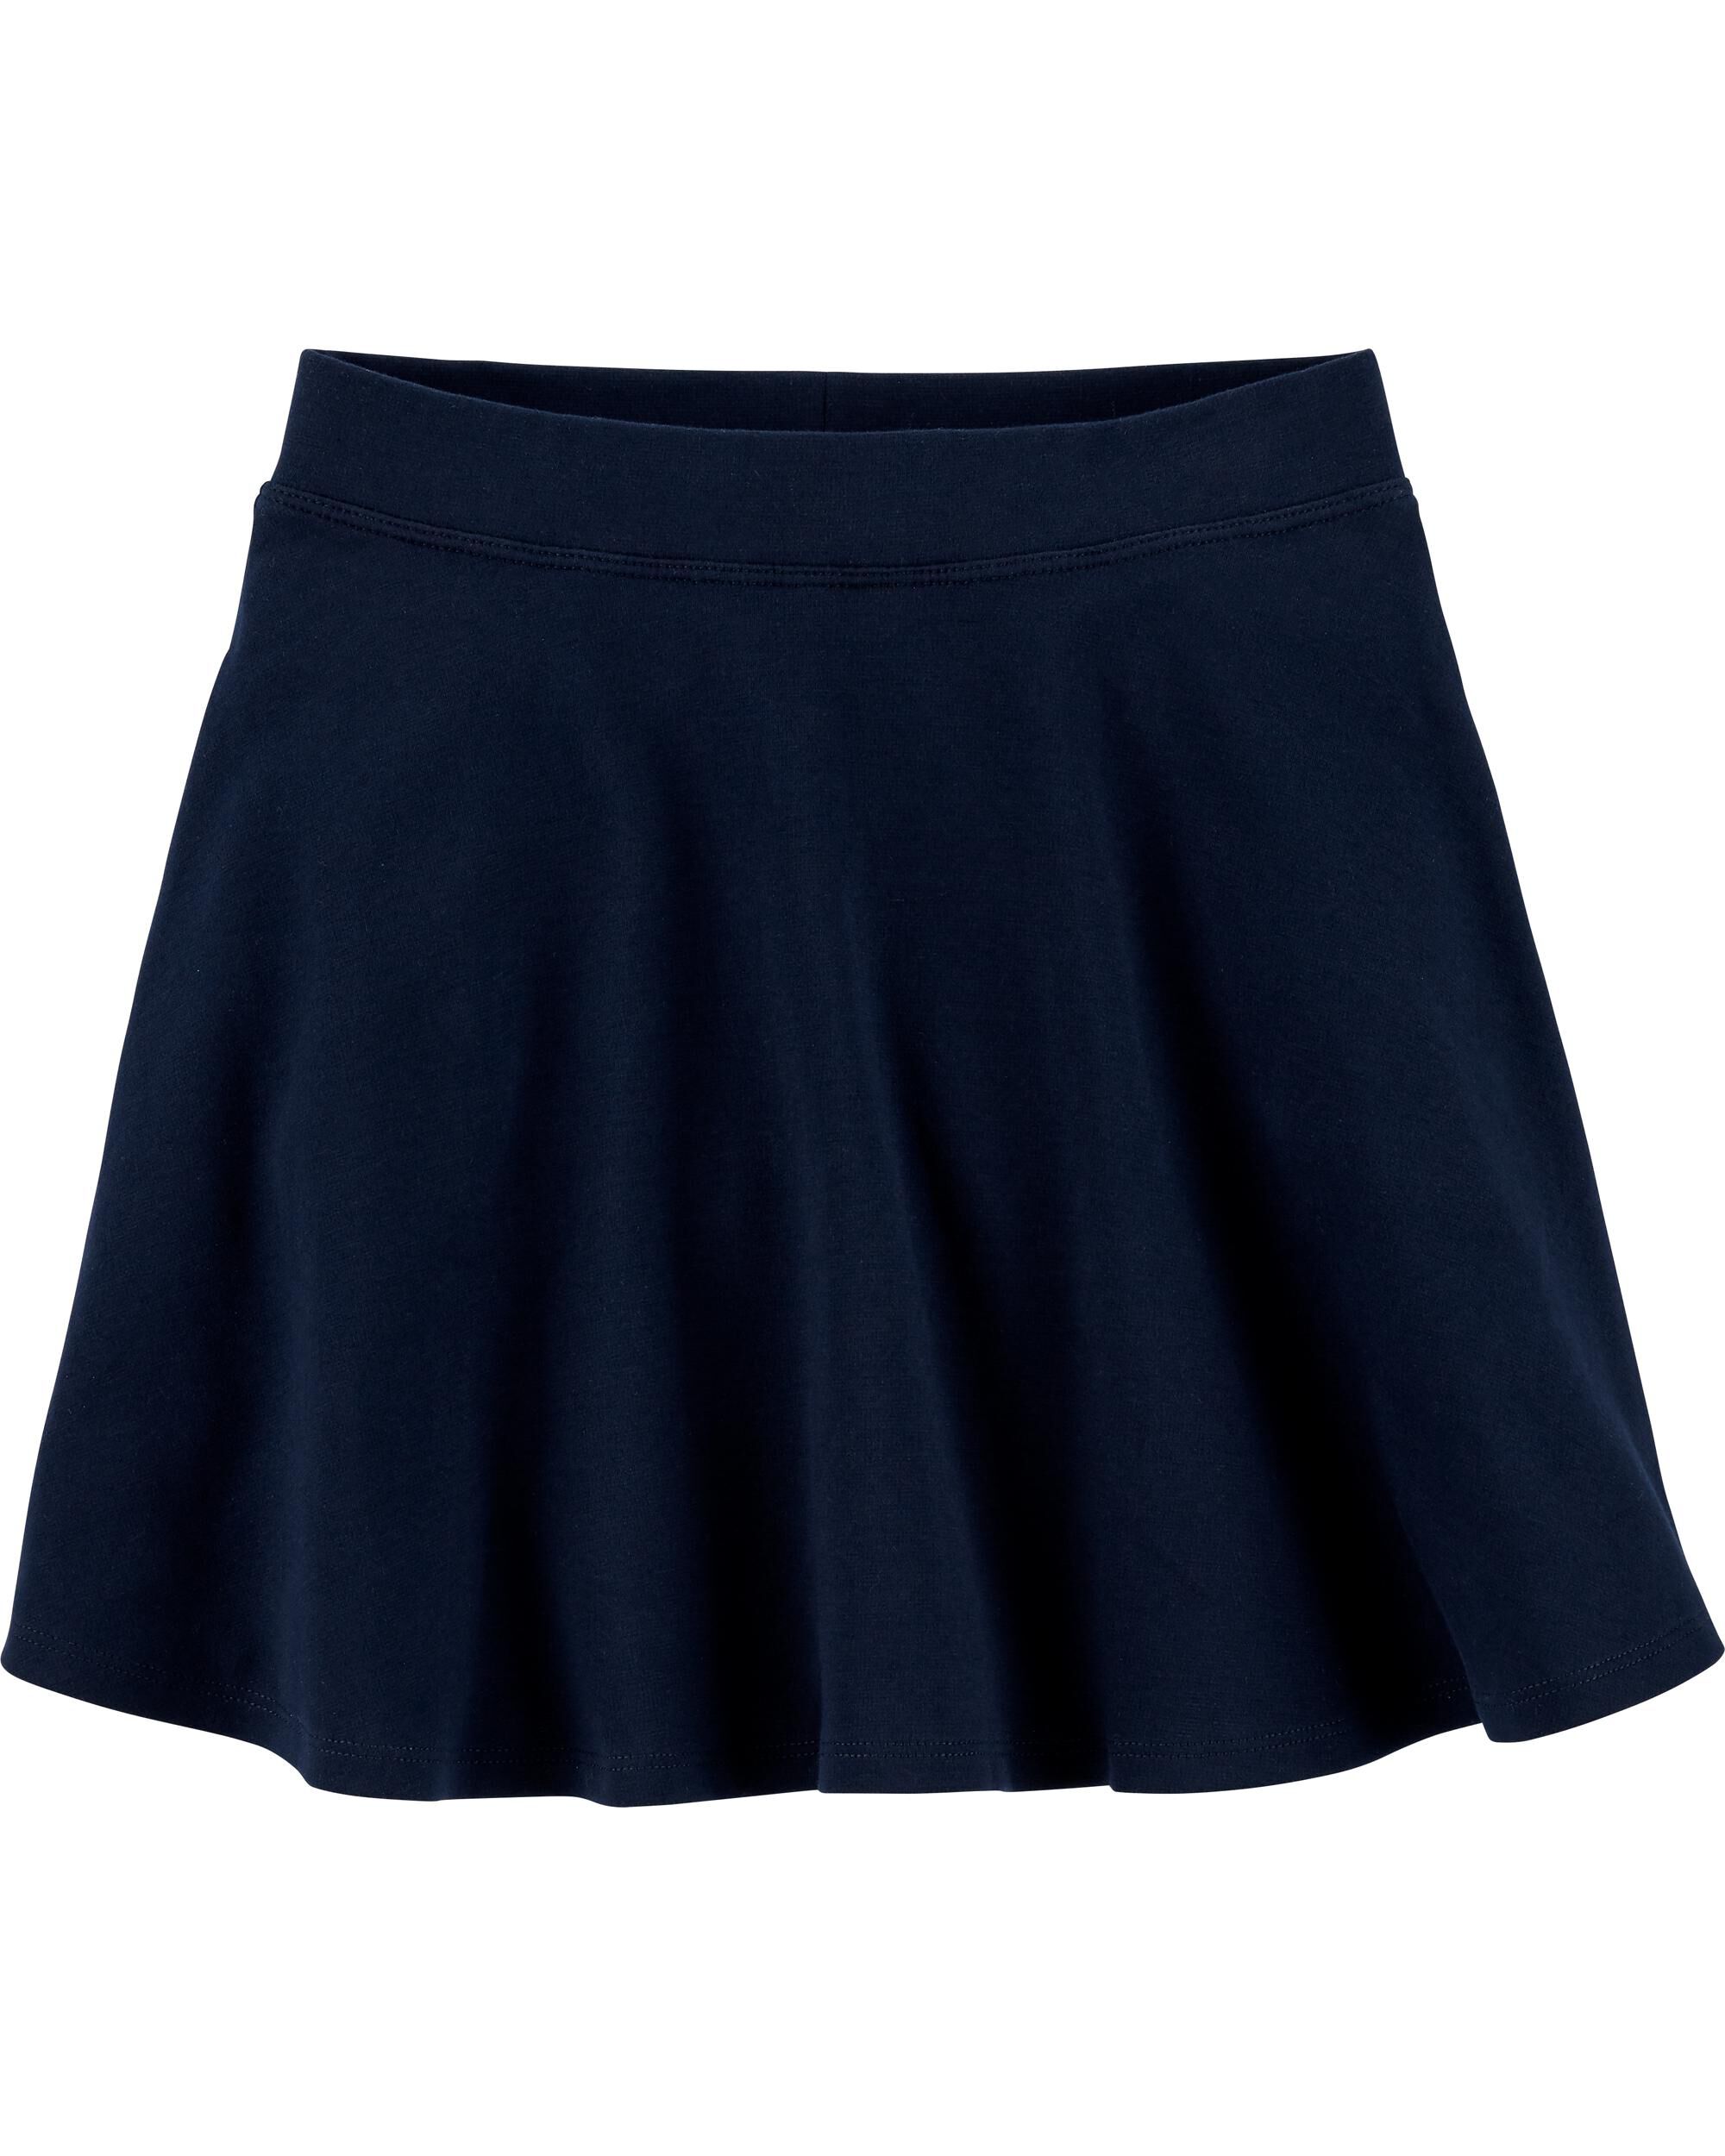 OshKosh BGosh Girls Kids Uniform Ponte Skirt 